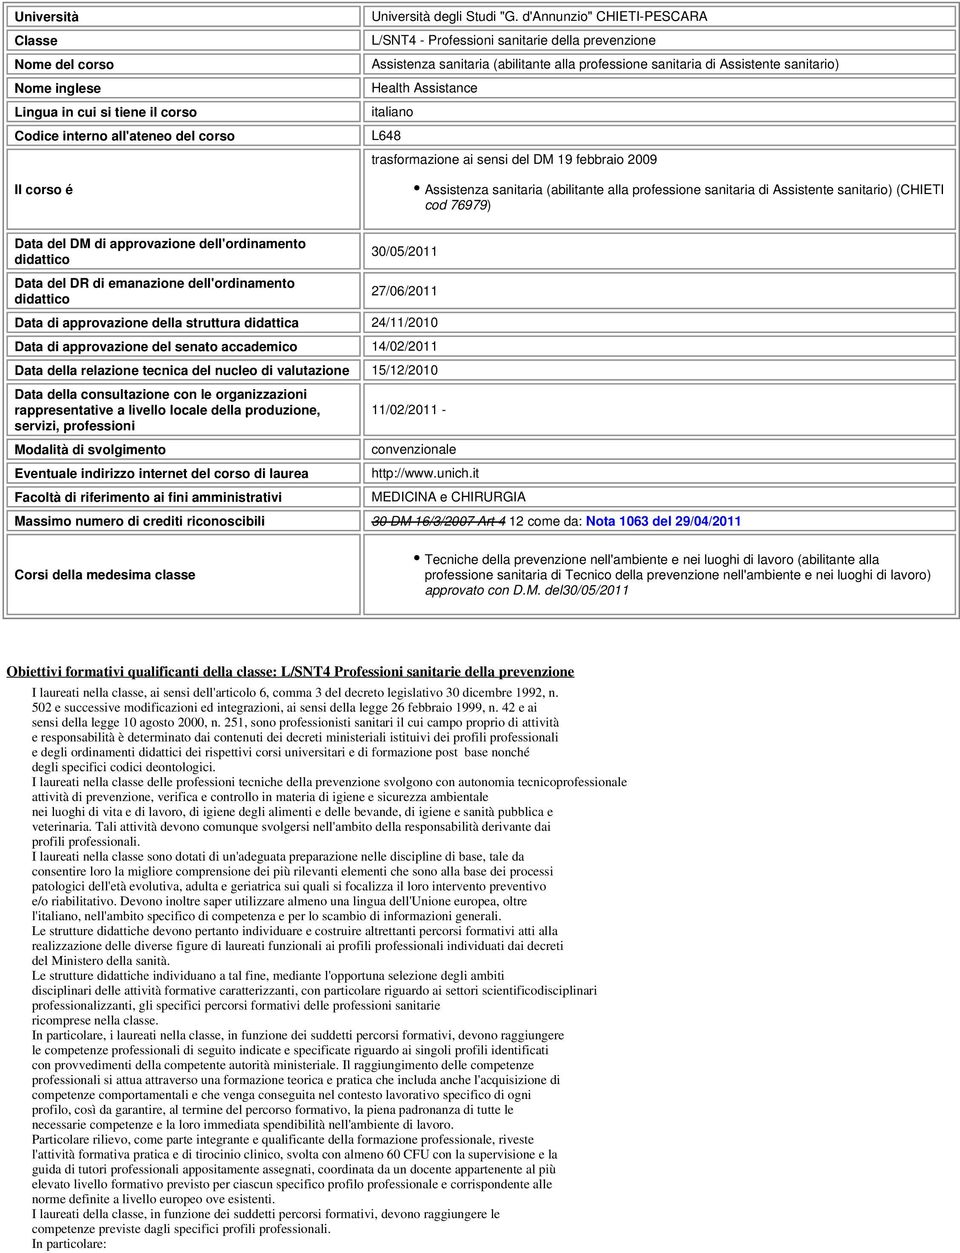 trasformazione ai sensi del DM 19 febbraio 2009 Assistenza sanitaria (abilitante alla professione sanitaria di Assistente sanitario) (CHIETI cod 76979) Data del DM di approvazione dell'ordinamento